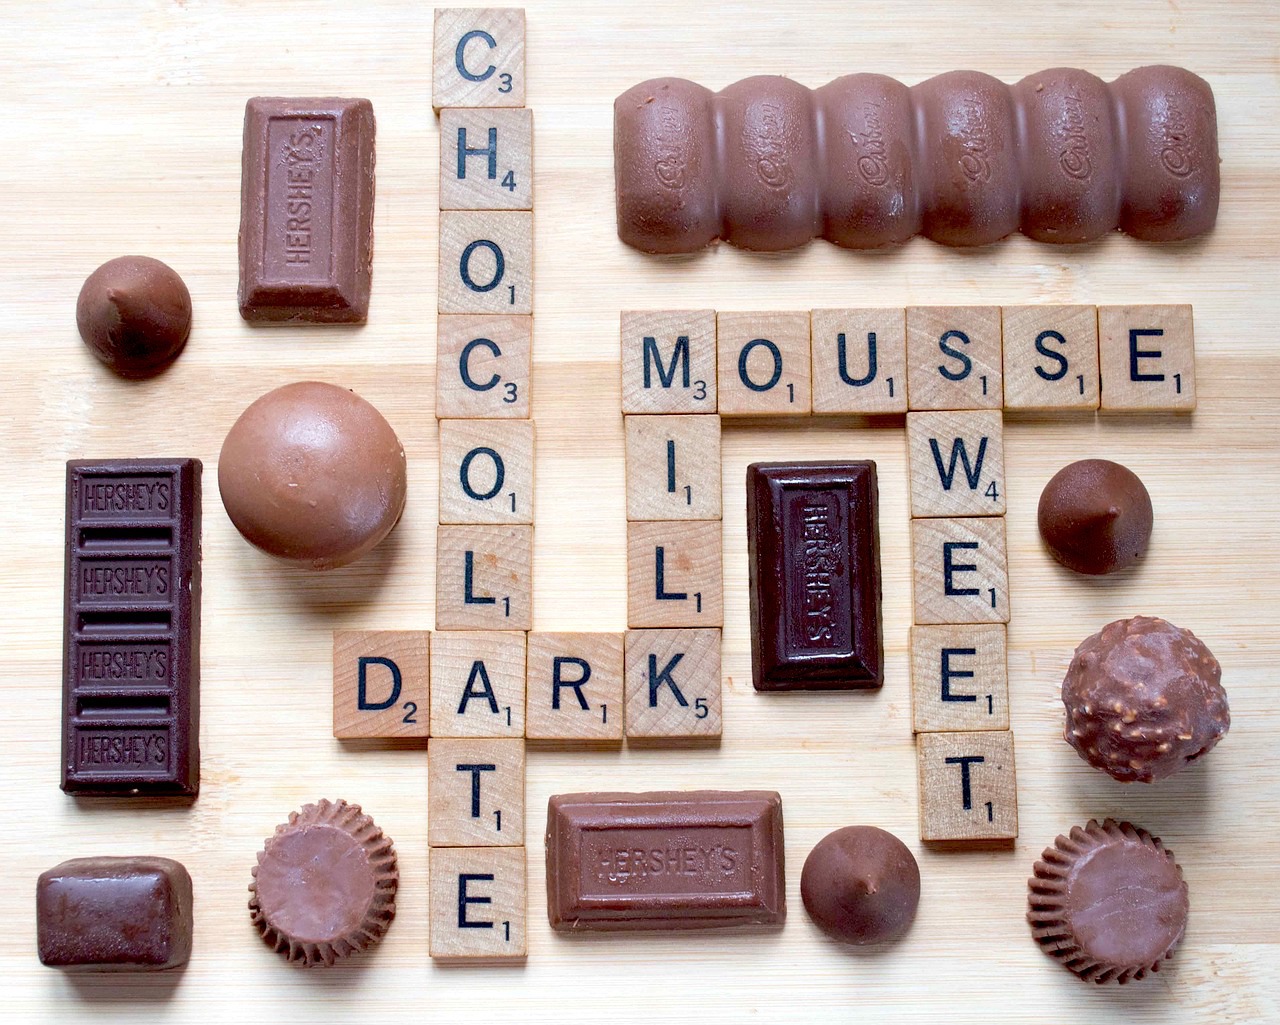 Mousse chocolat praliné sans oeufs (c) The chocolate web site CC0 Pixabay